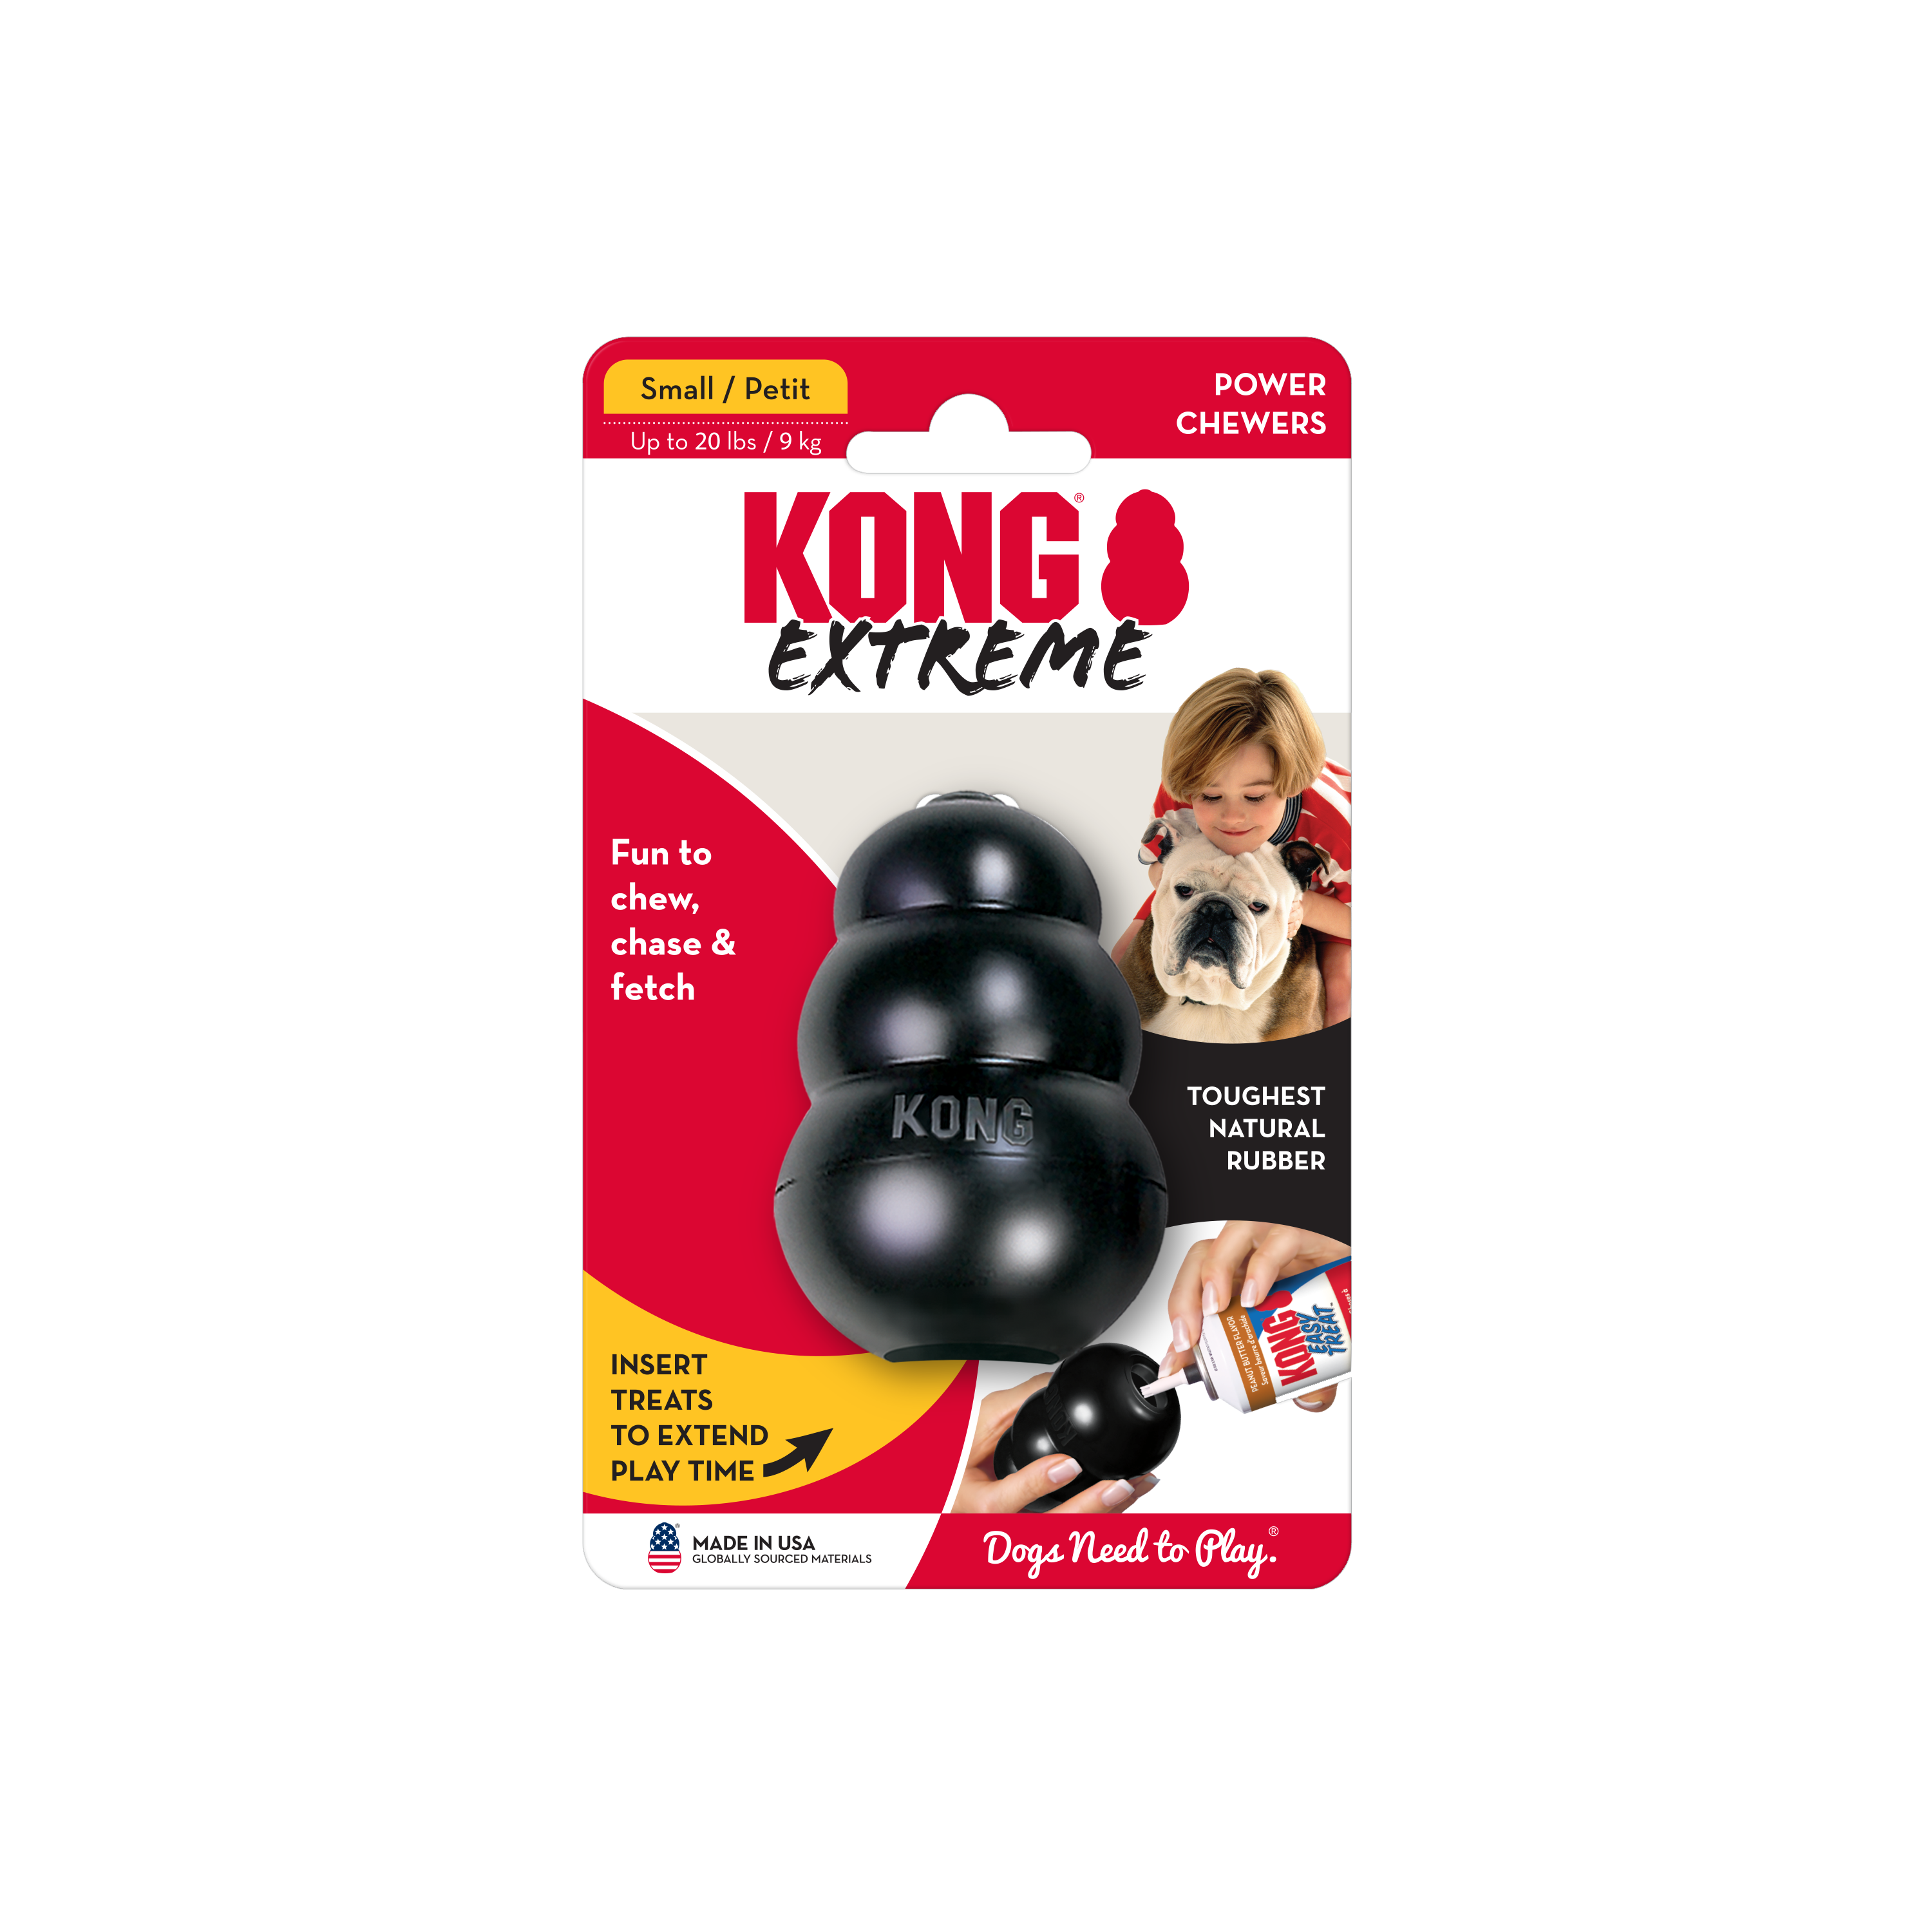 KONG Extreme onpack product image